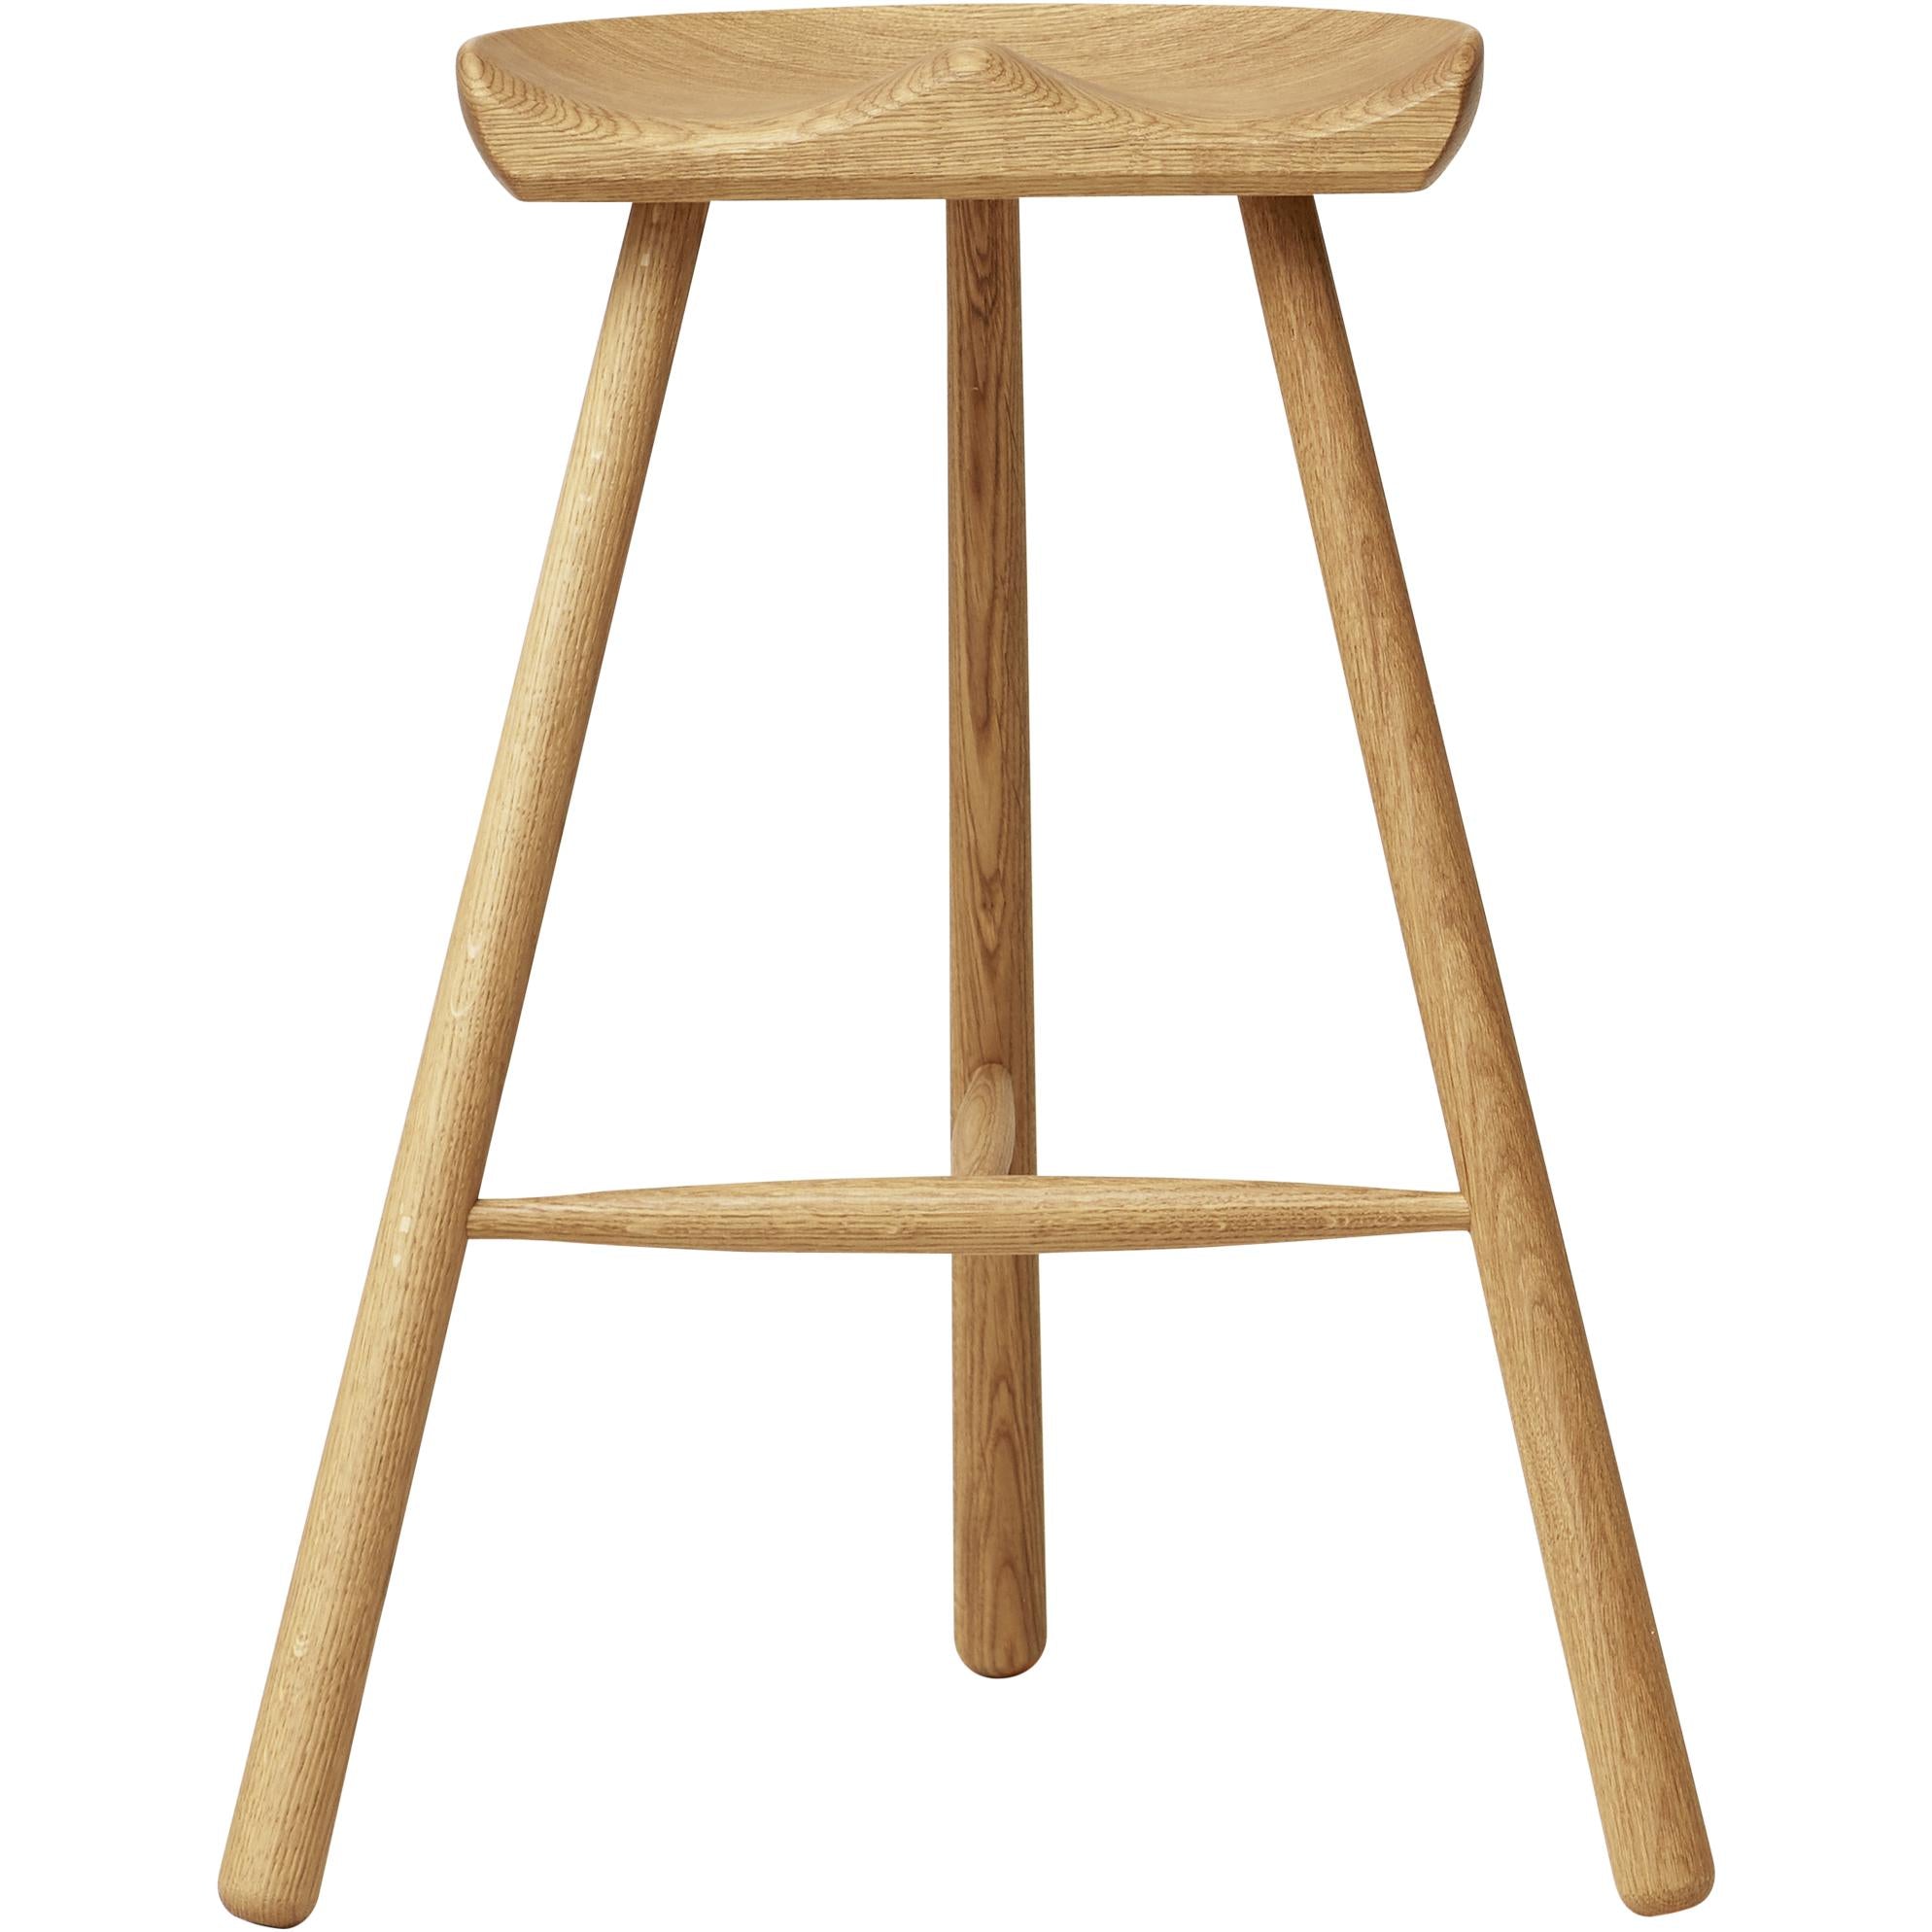 Form&Refine Shoemaker Chair™  No. 68 cm, Eg